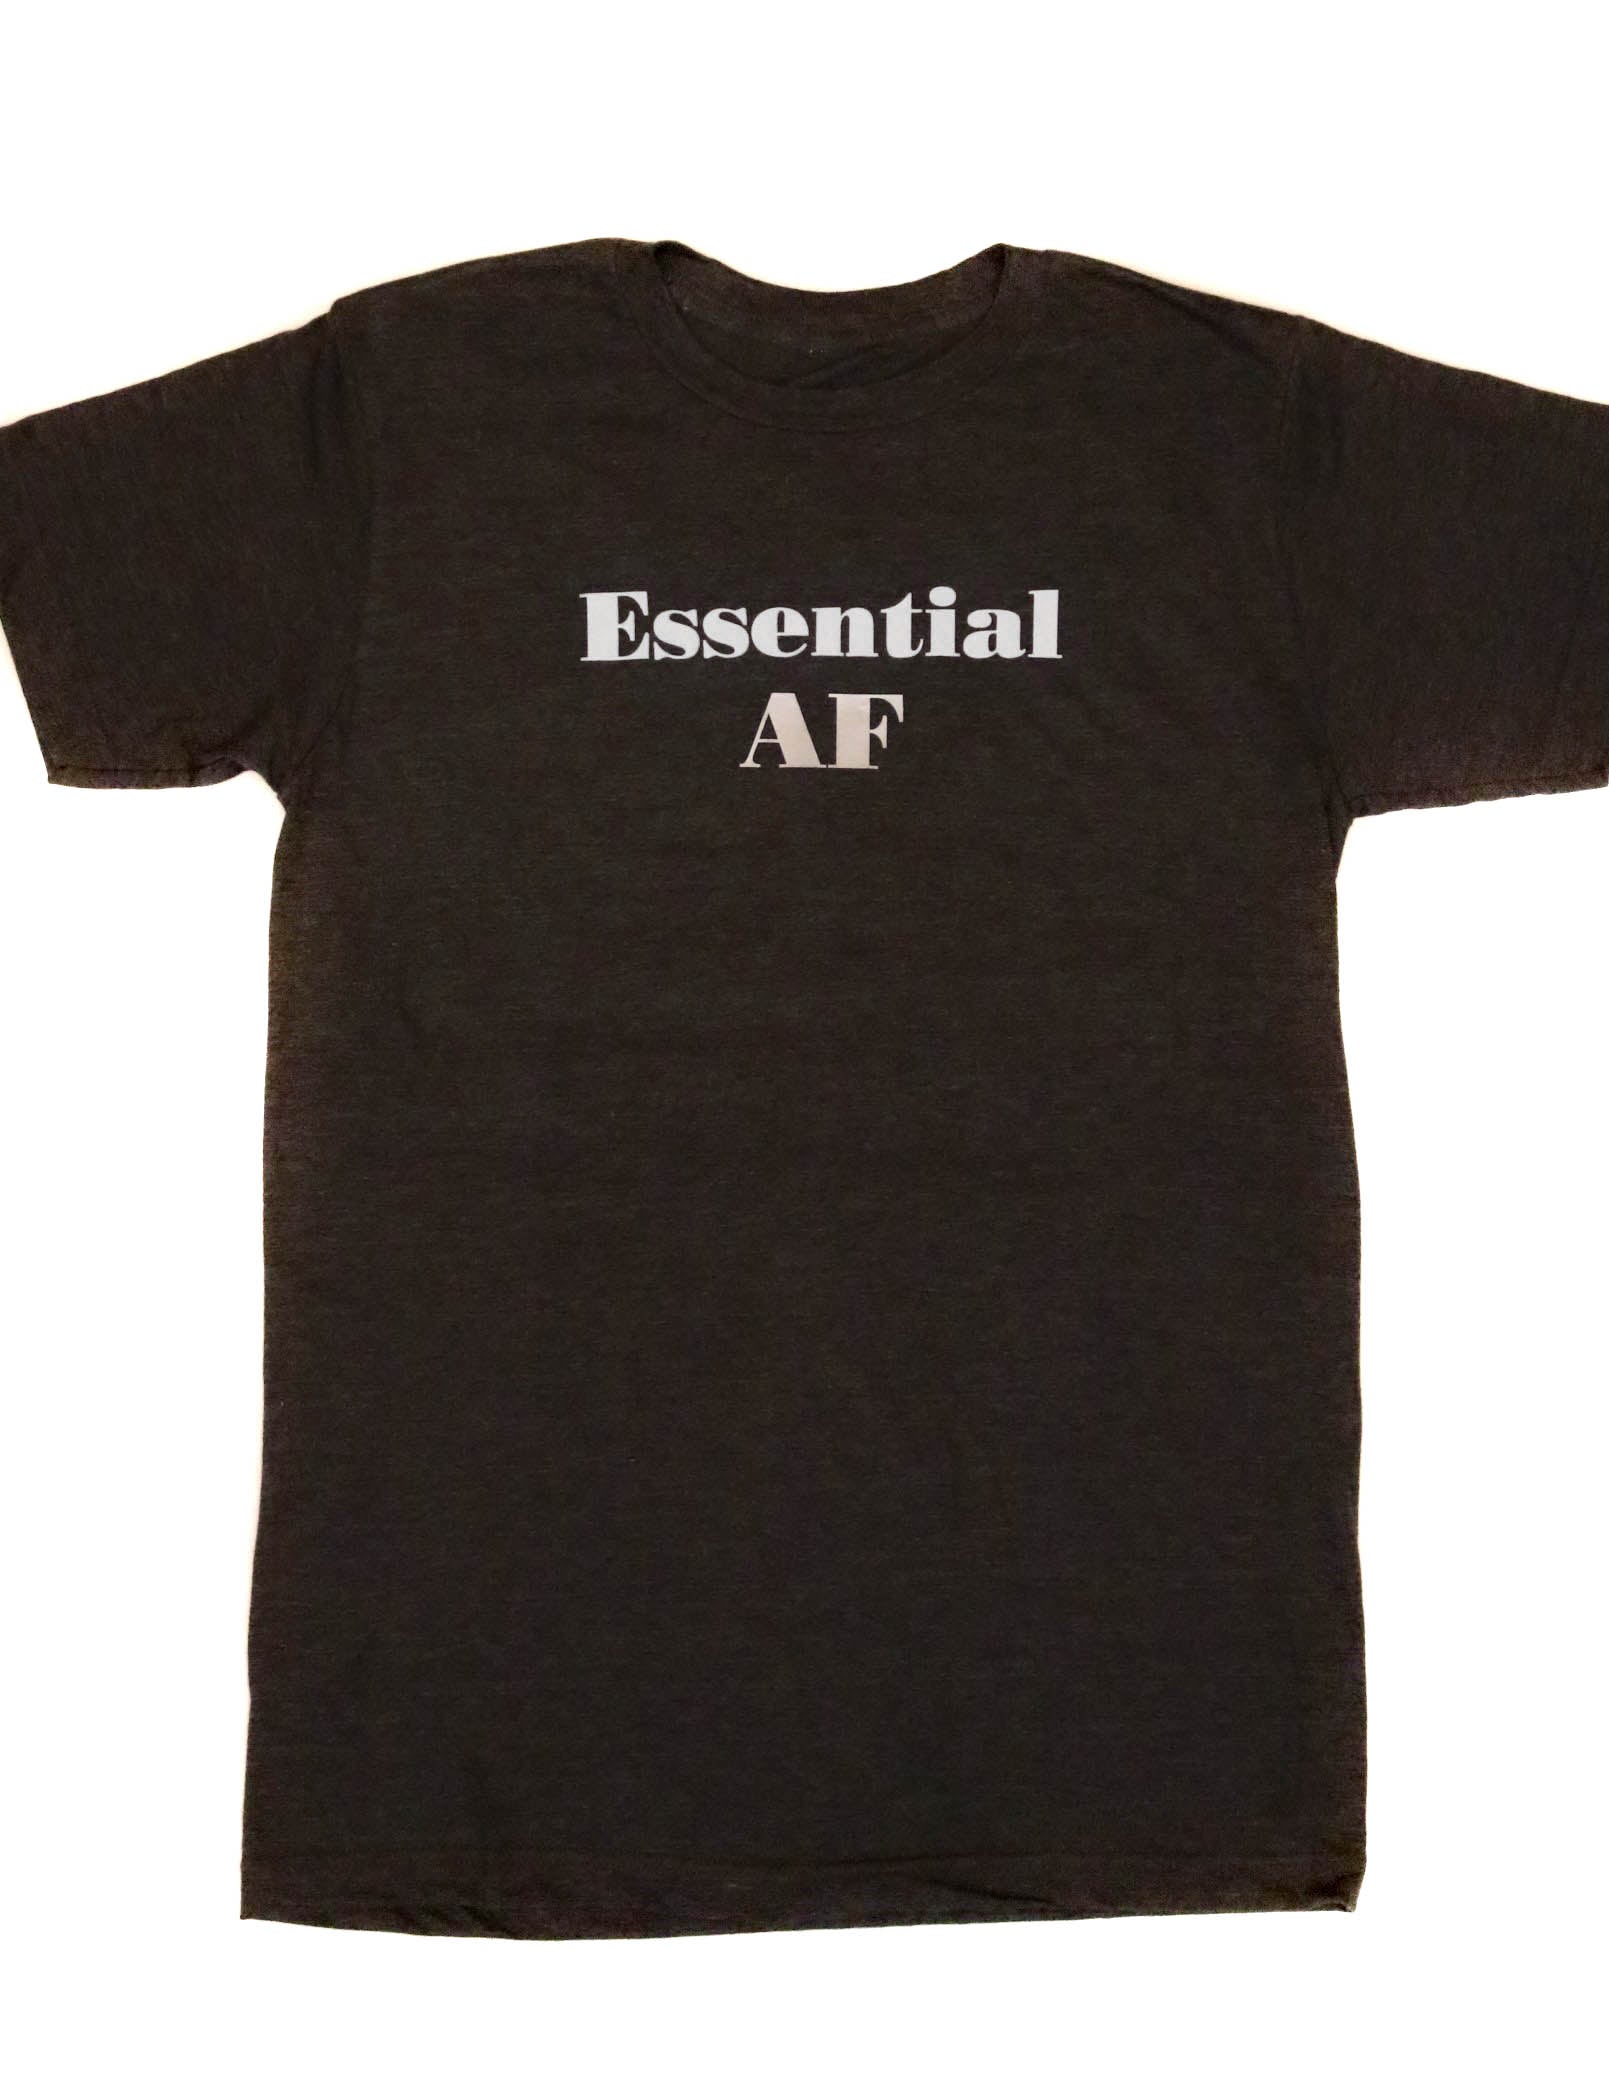 Essential AF Essential AF Shirt